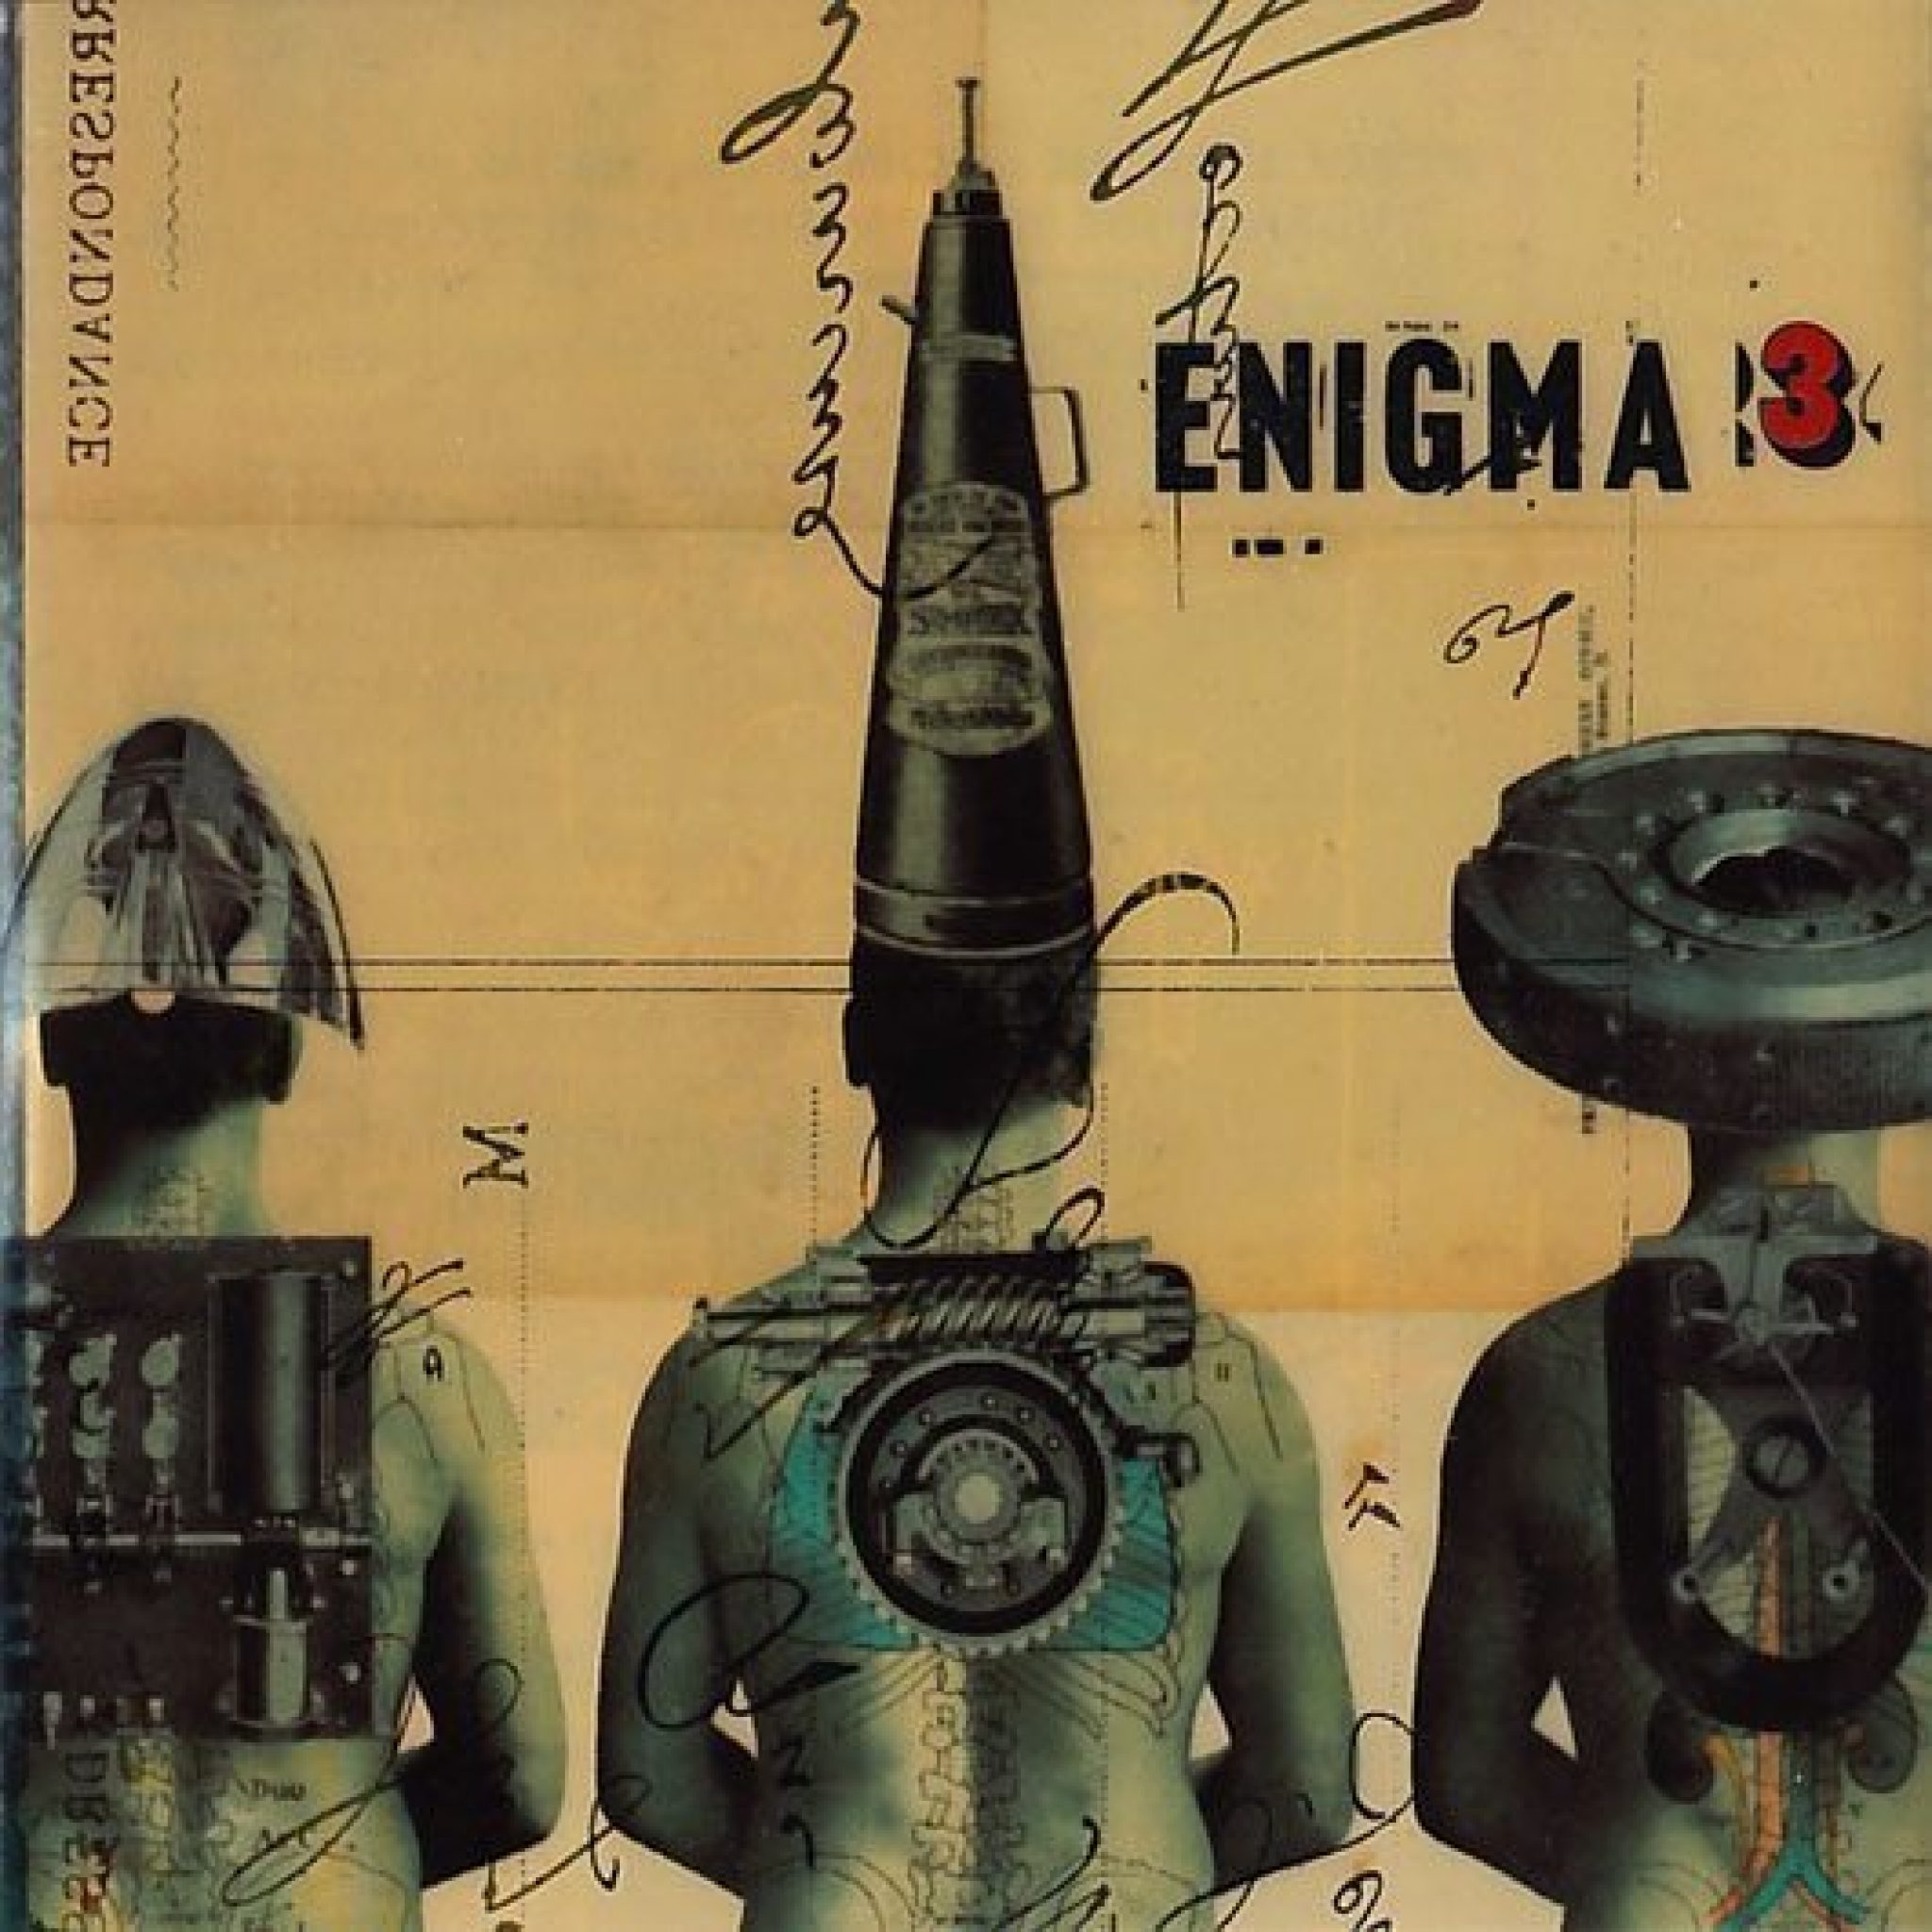 Roi est mort. Обложка Enigma le roi est mort Vive le roi. Enigma le roi est mort Vive le roi 1996 альбом. Enigma Cover обложка. Enigma 3 альбом.